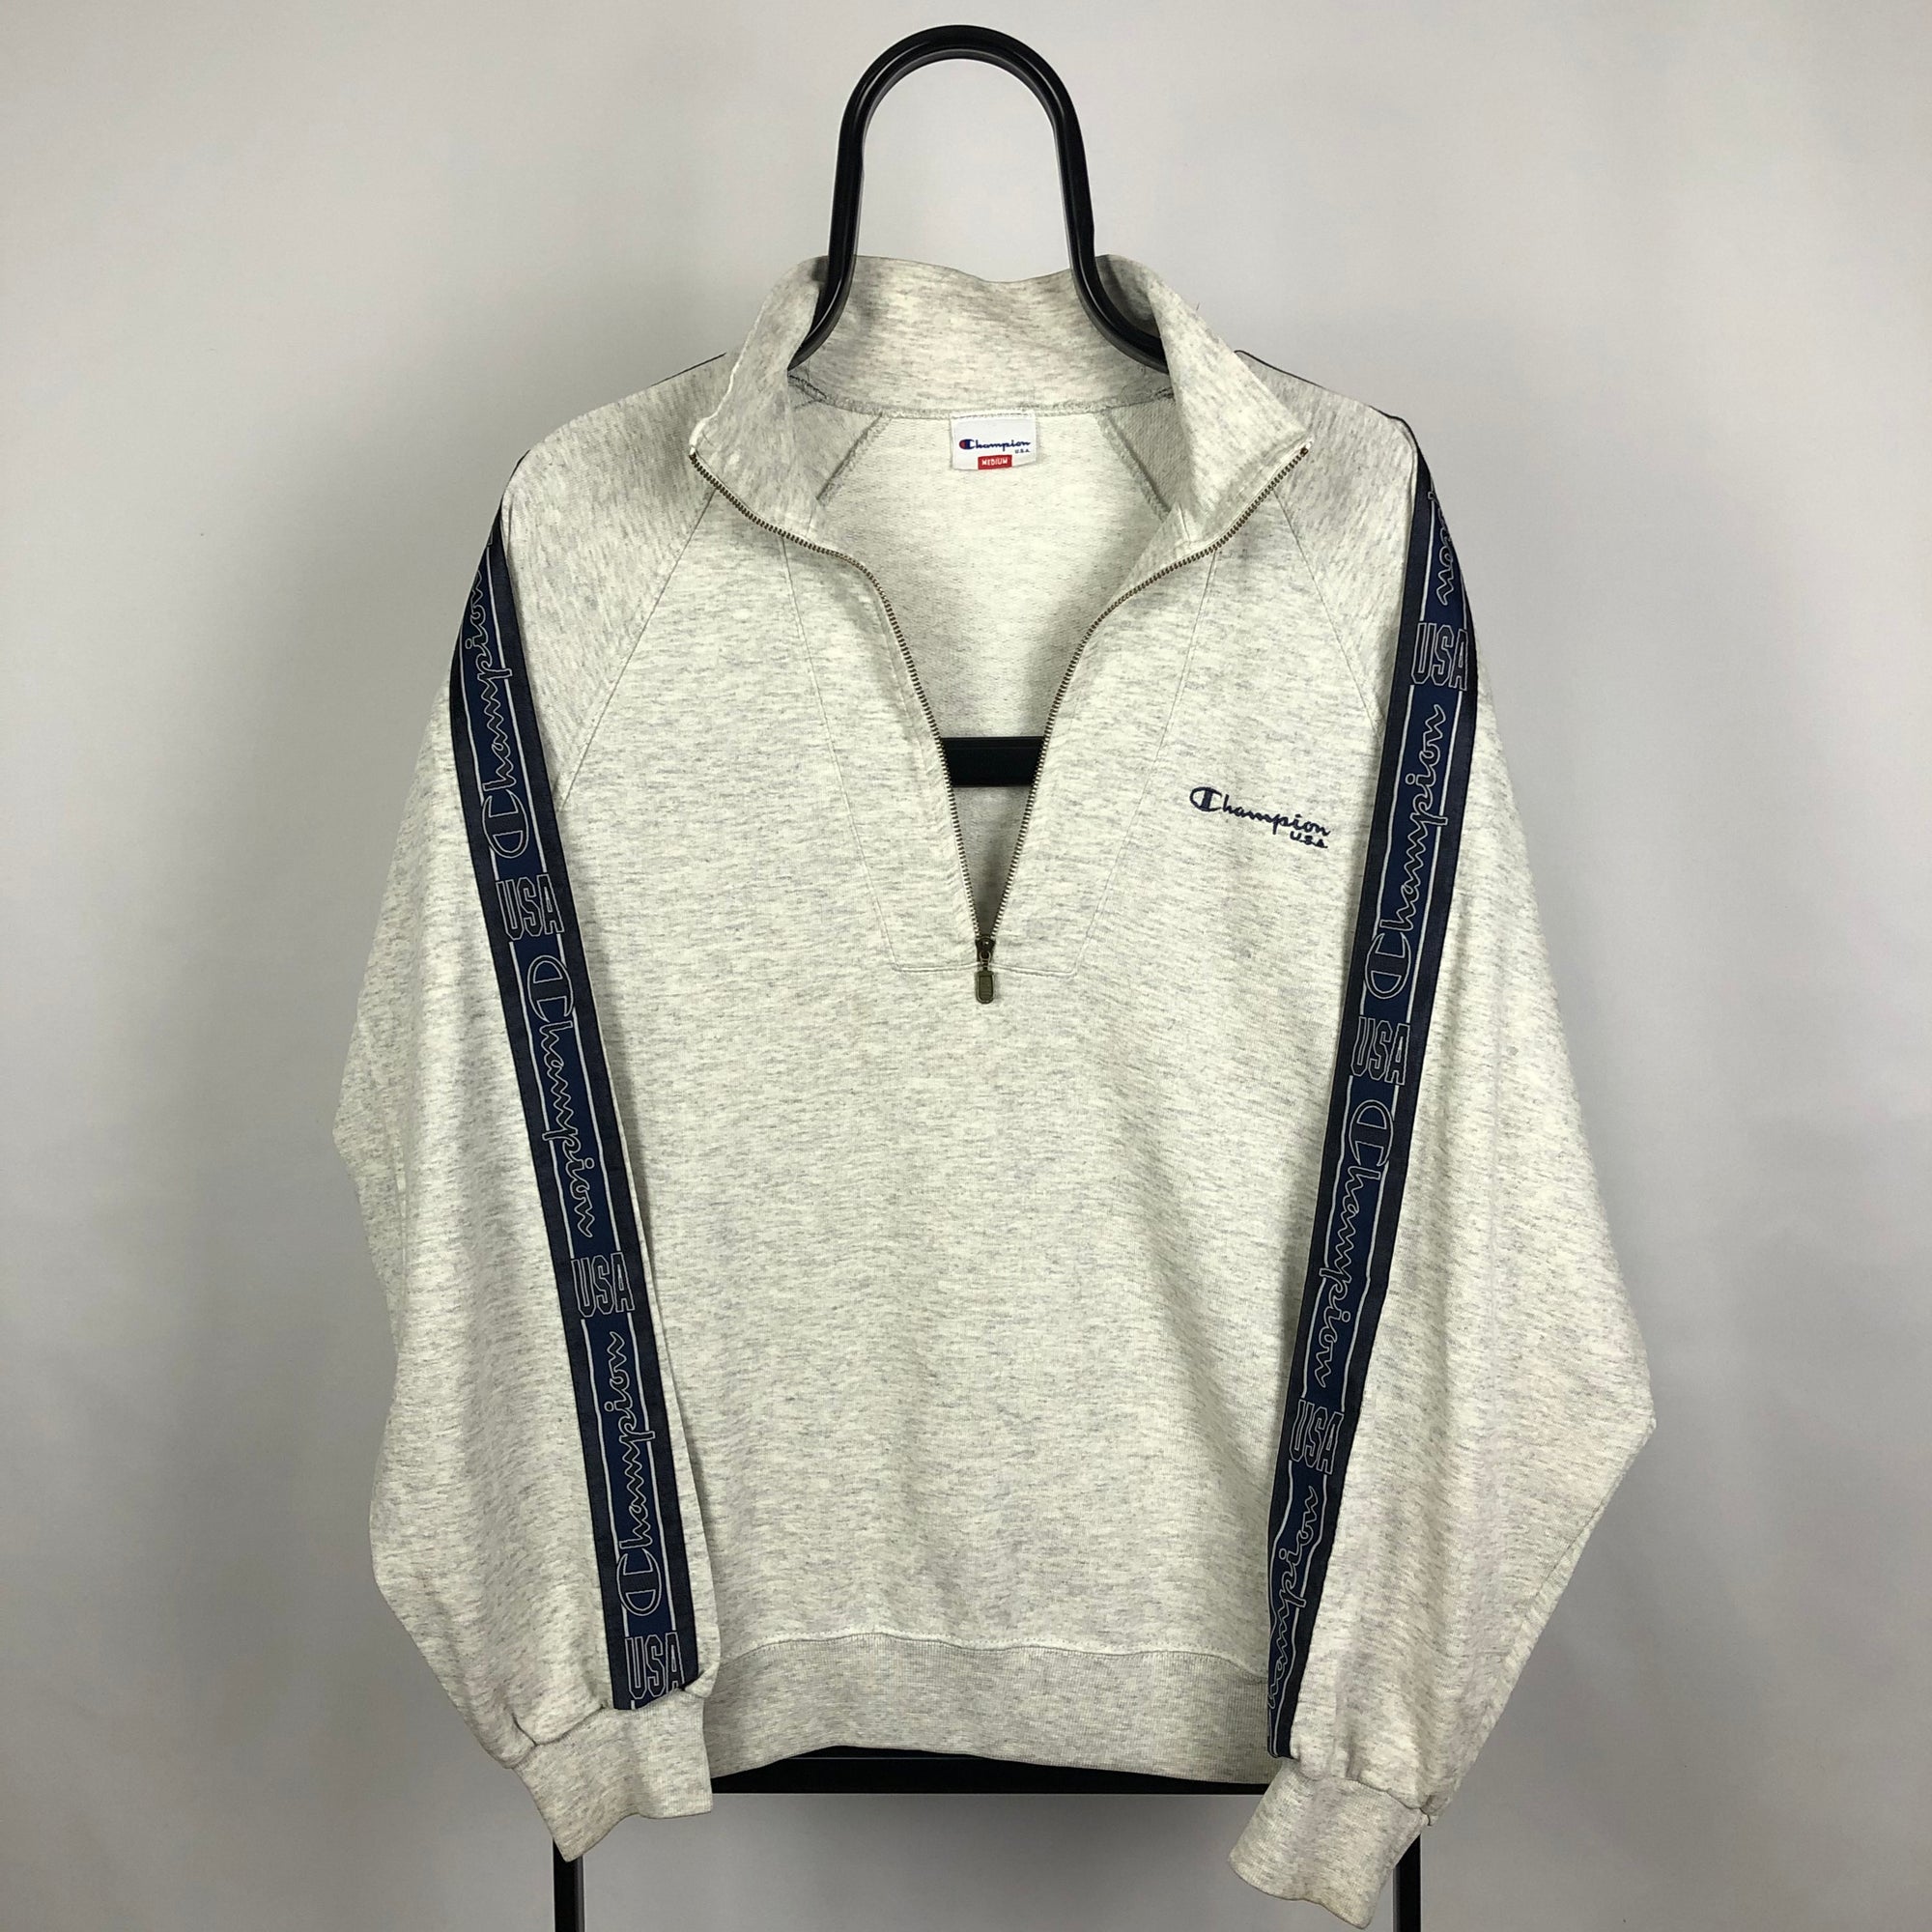 Champion 1/4 Zip Sweatshirt in Grey - Men's Medium/Women's Large